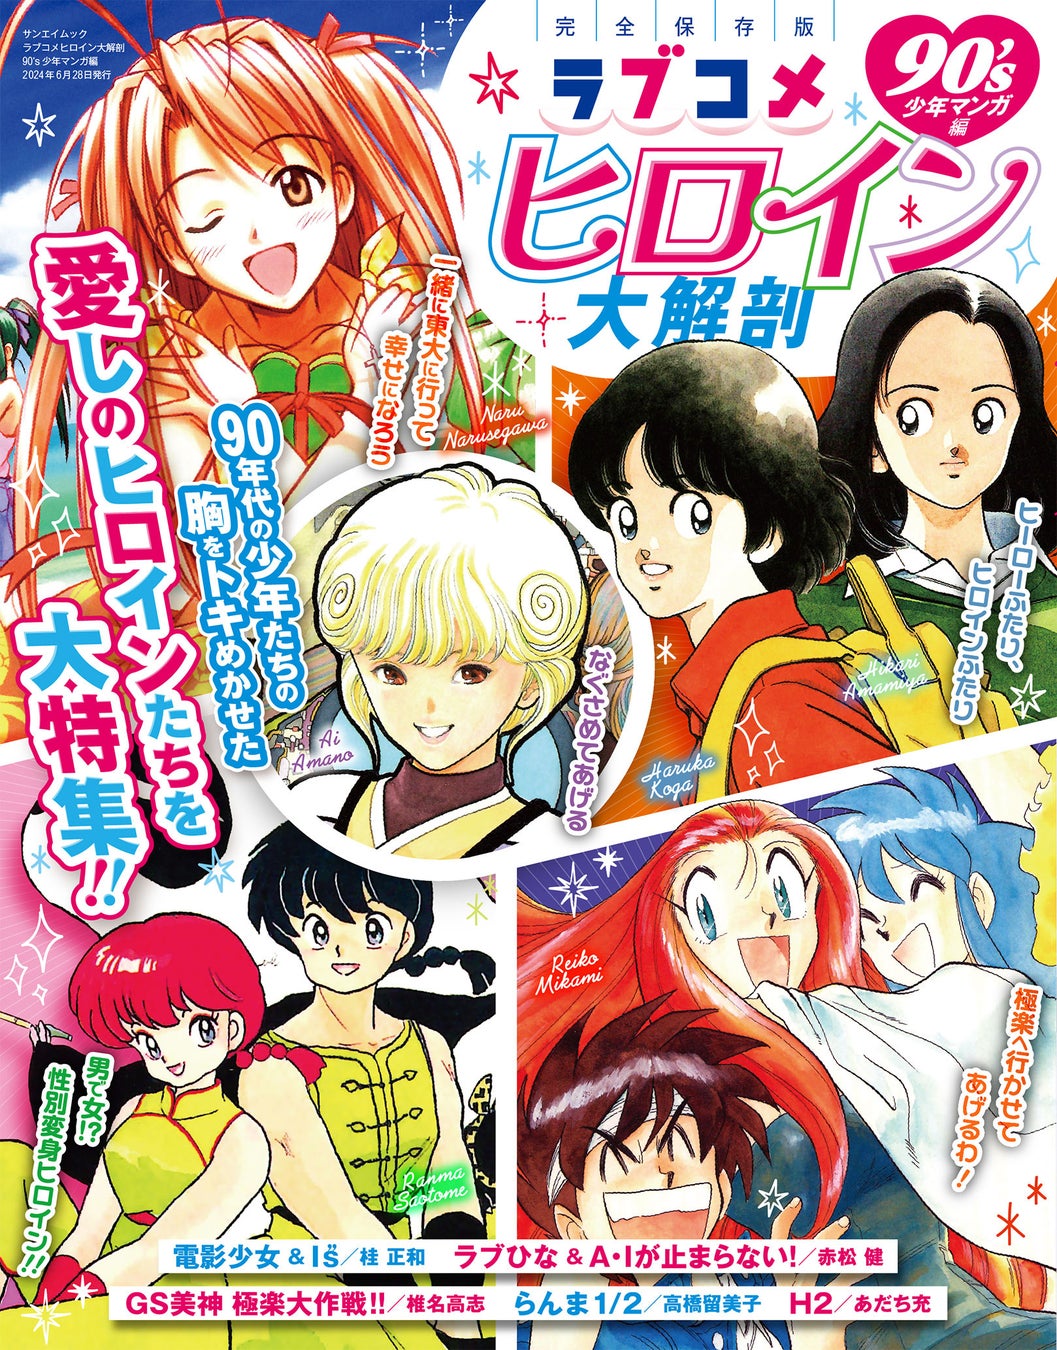 〈現実世界〉から〈異世界〉まで……女性向け新コミックレーベル「月夢 Tsukiyume」創刊！